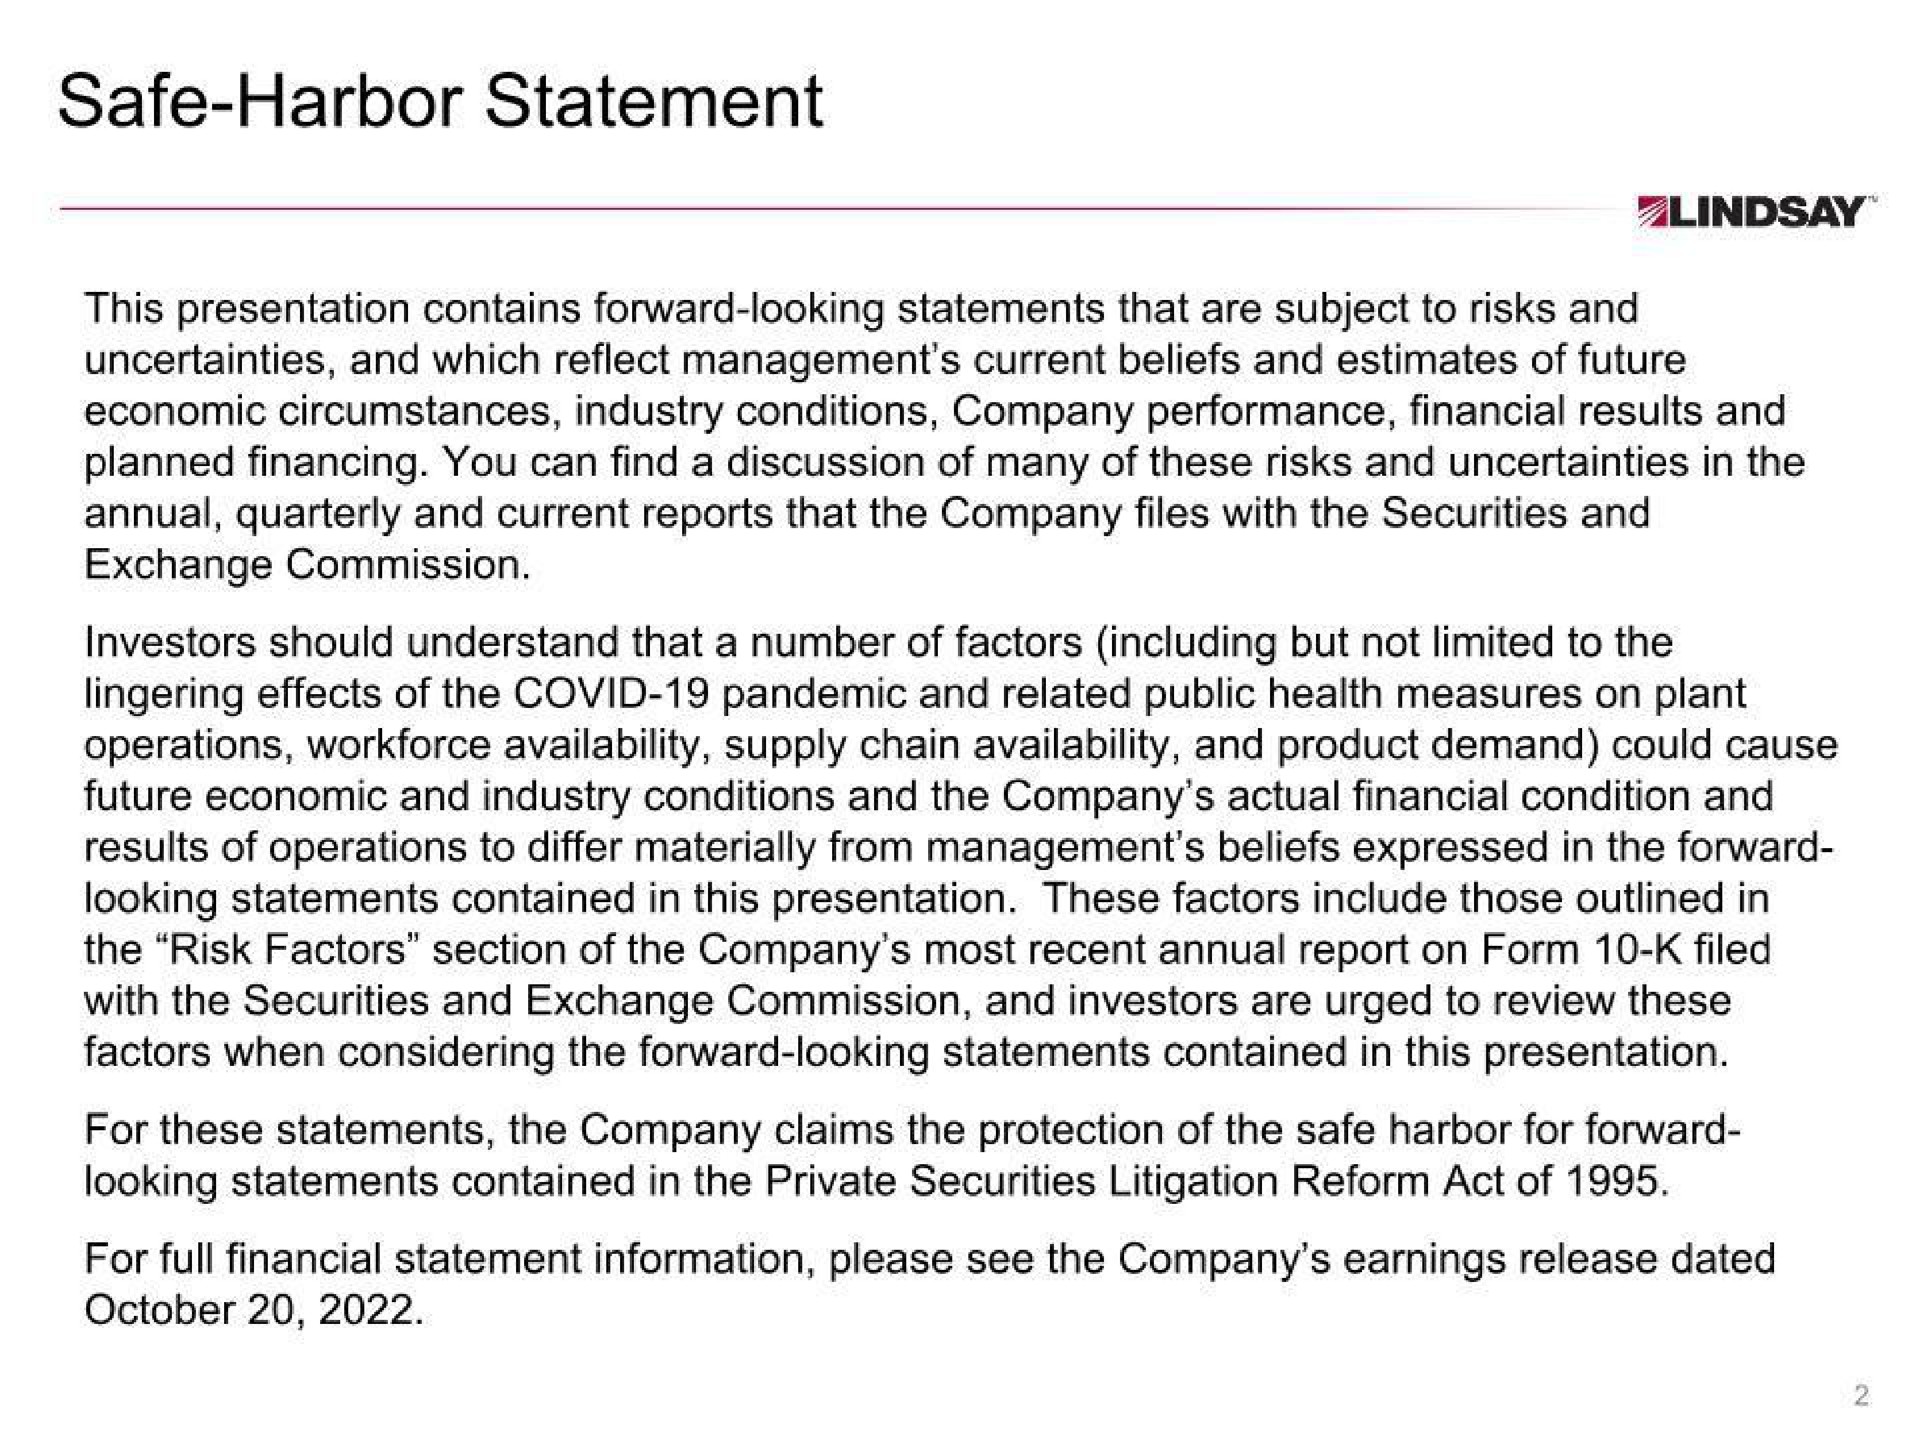 safe harbor statement | Lindsay Corporation